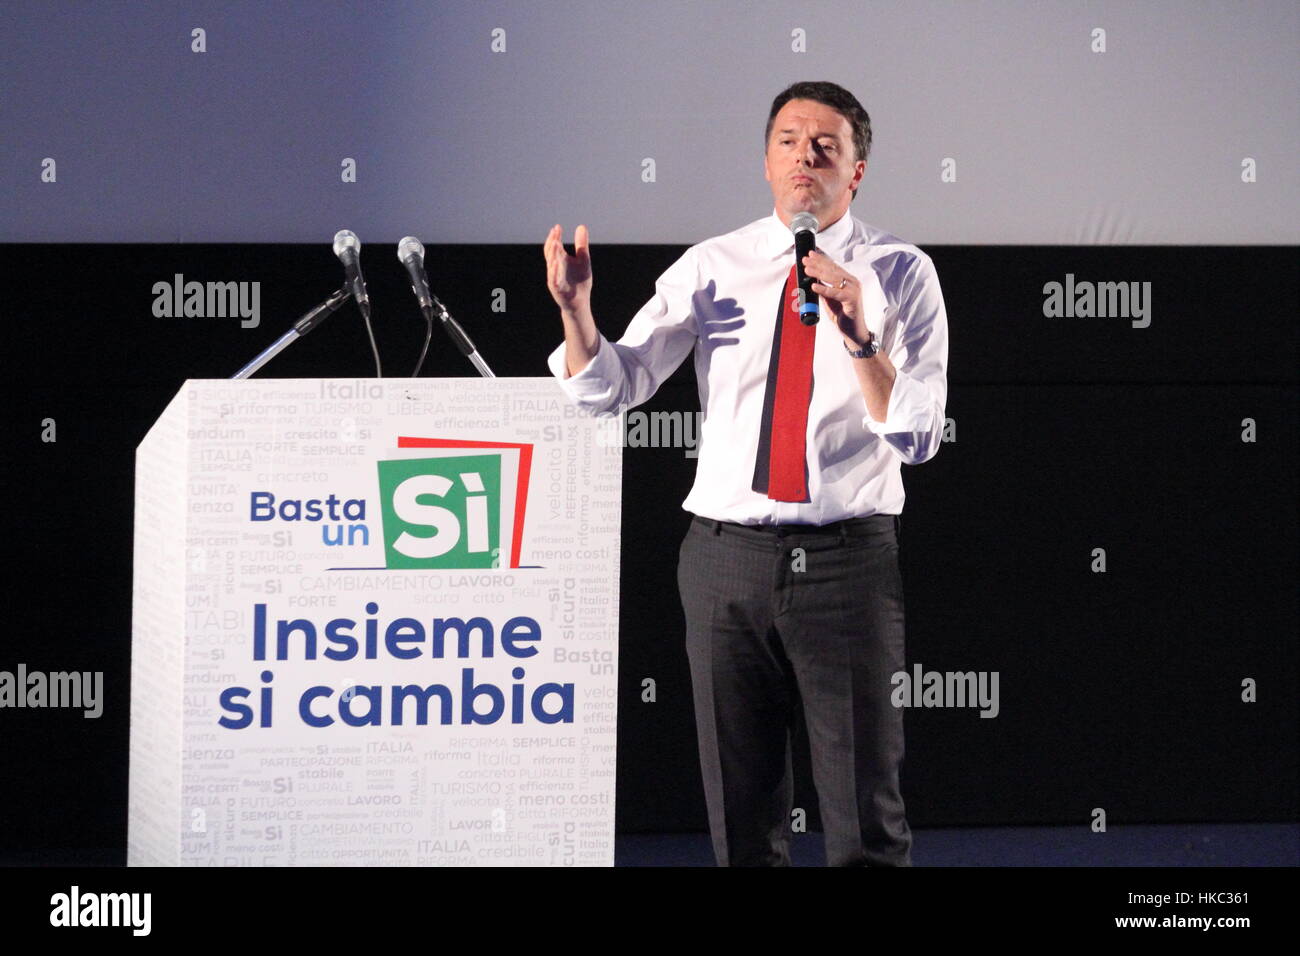 Frosinone, Italia - 8 novembre 2016: La campagna elettorale di Matteo Renzi per il Referendum costituzionale Stockfoto